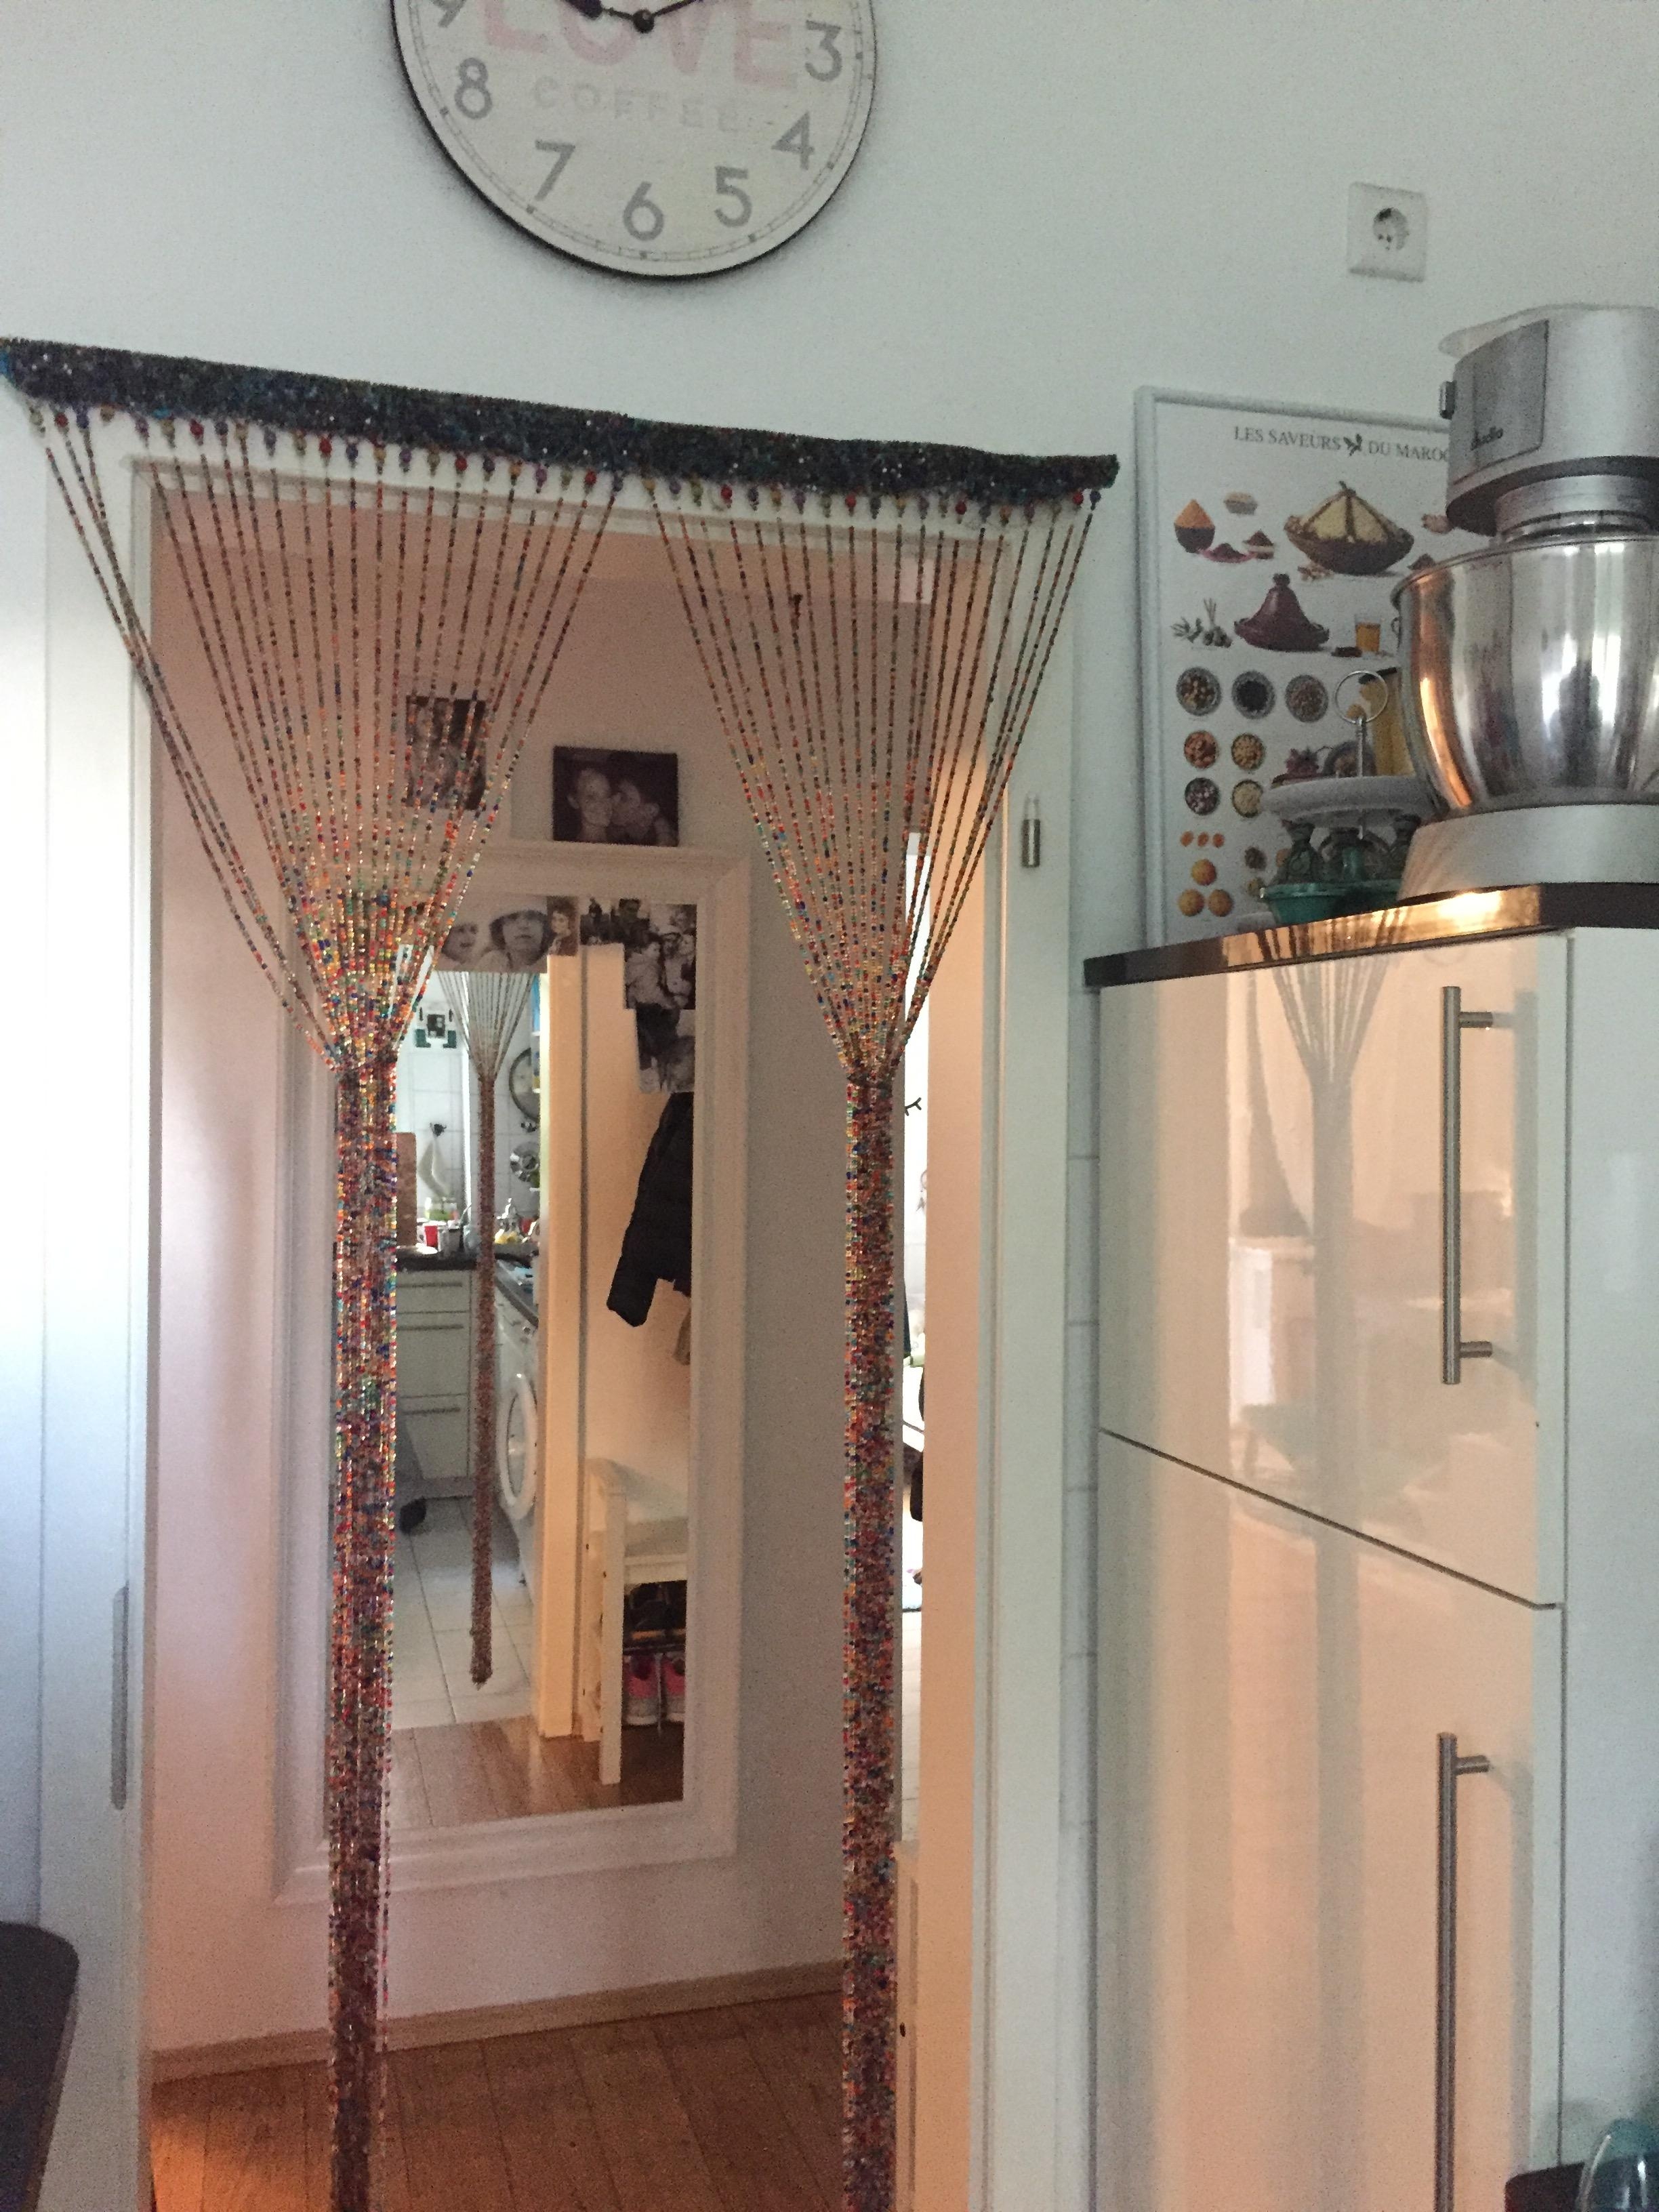 Mein wunderbarer Türvorhang. Oldschool oder kitschig? Ach, ich liebe ihn einfach heiß und innig! 💛
#küche